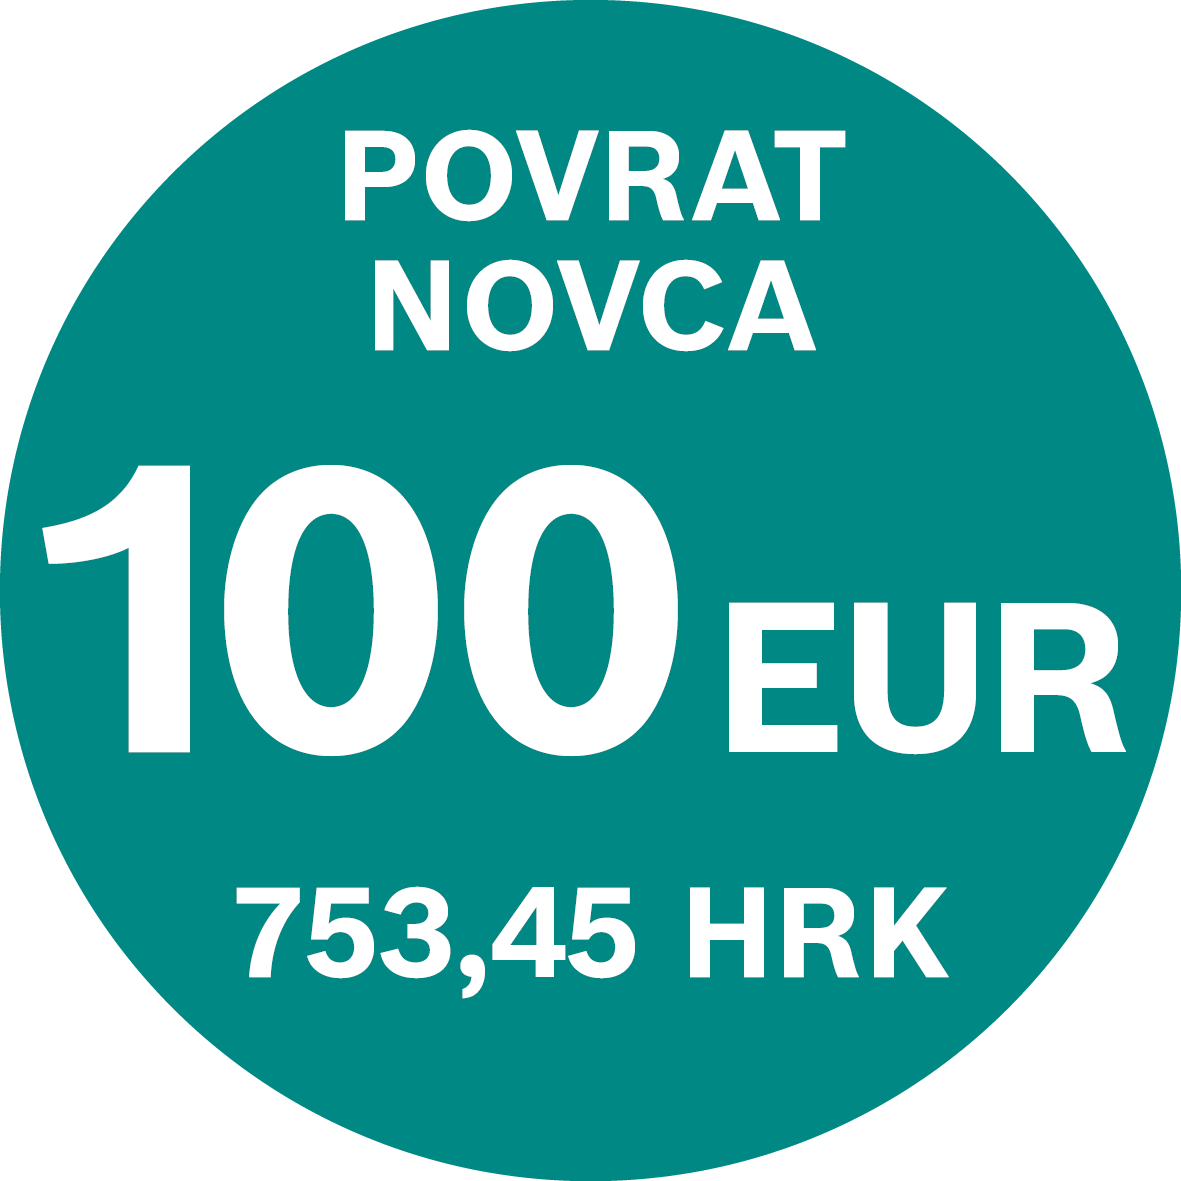 bosch-povrat-novca-100_.png